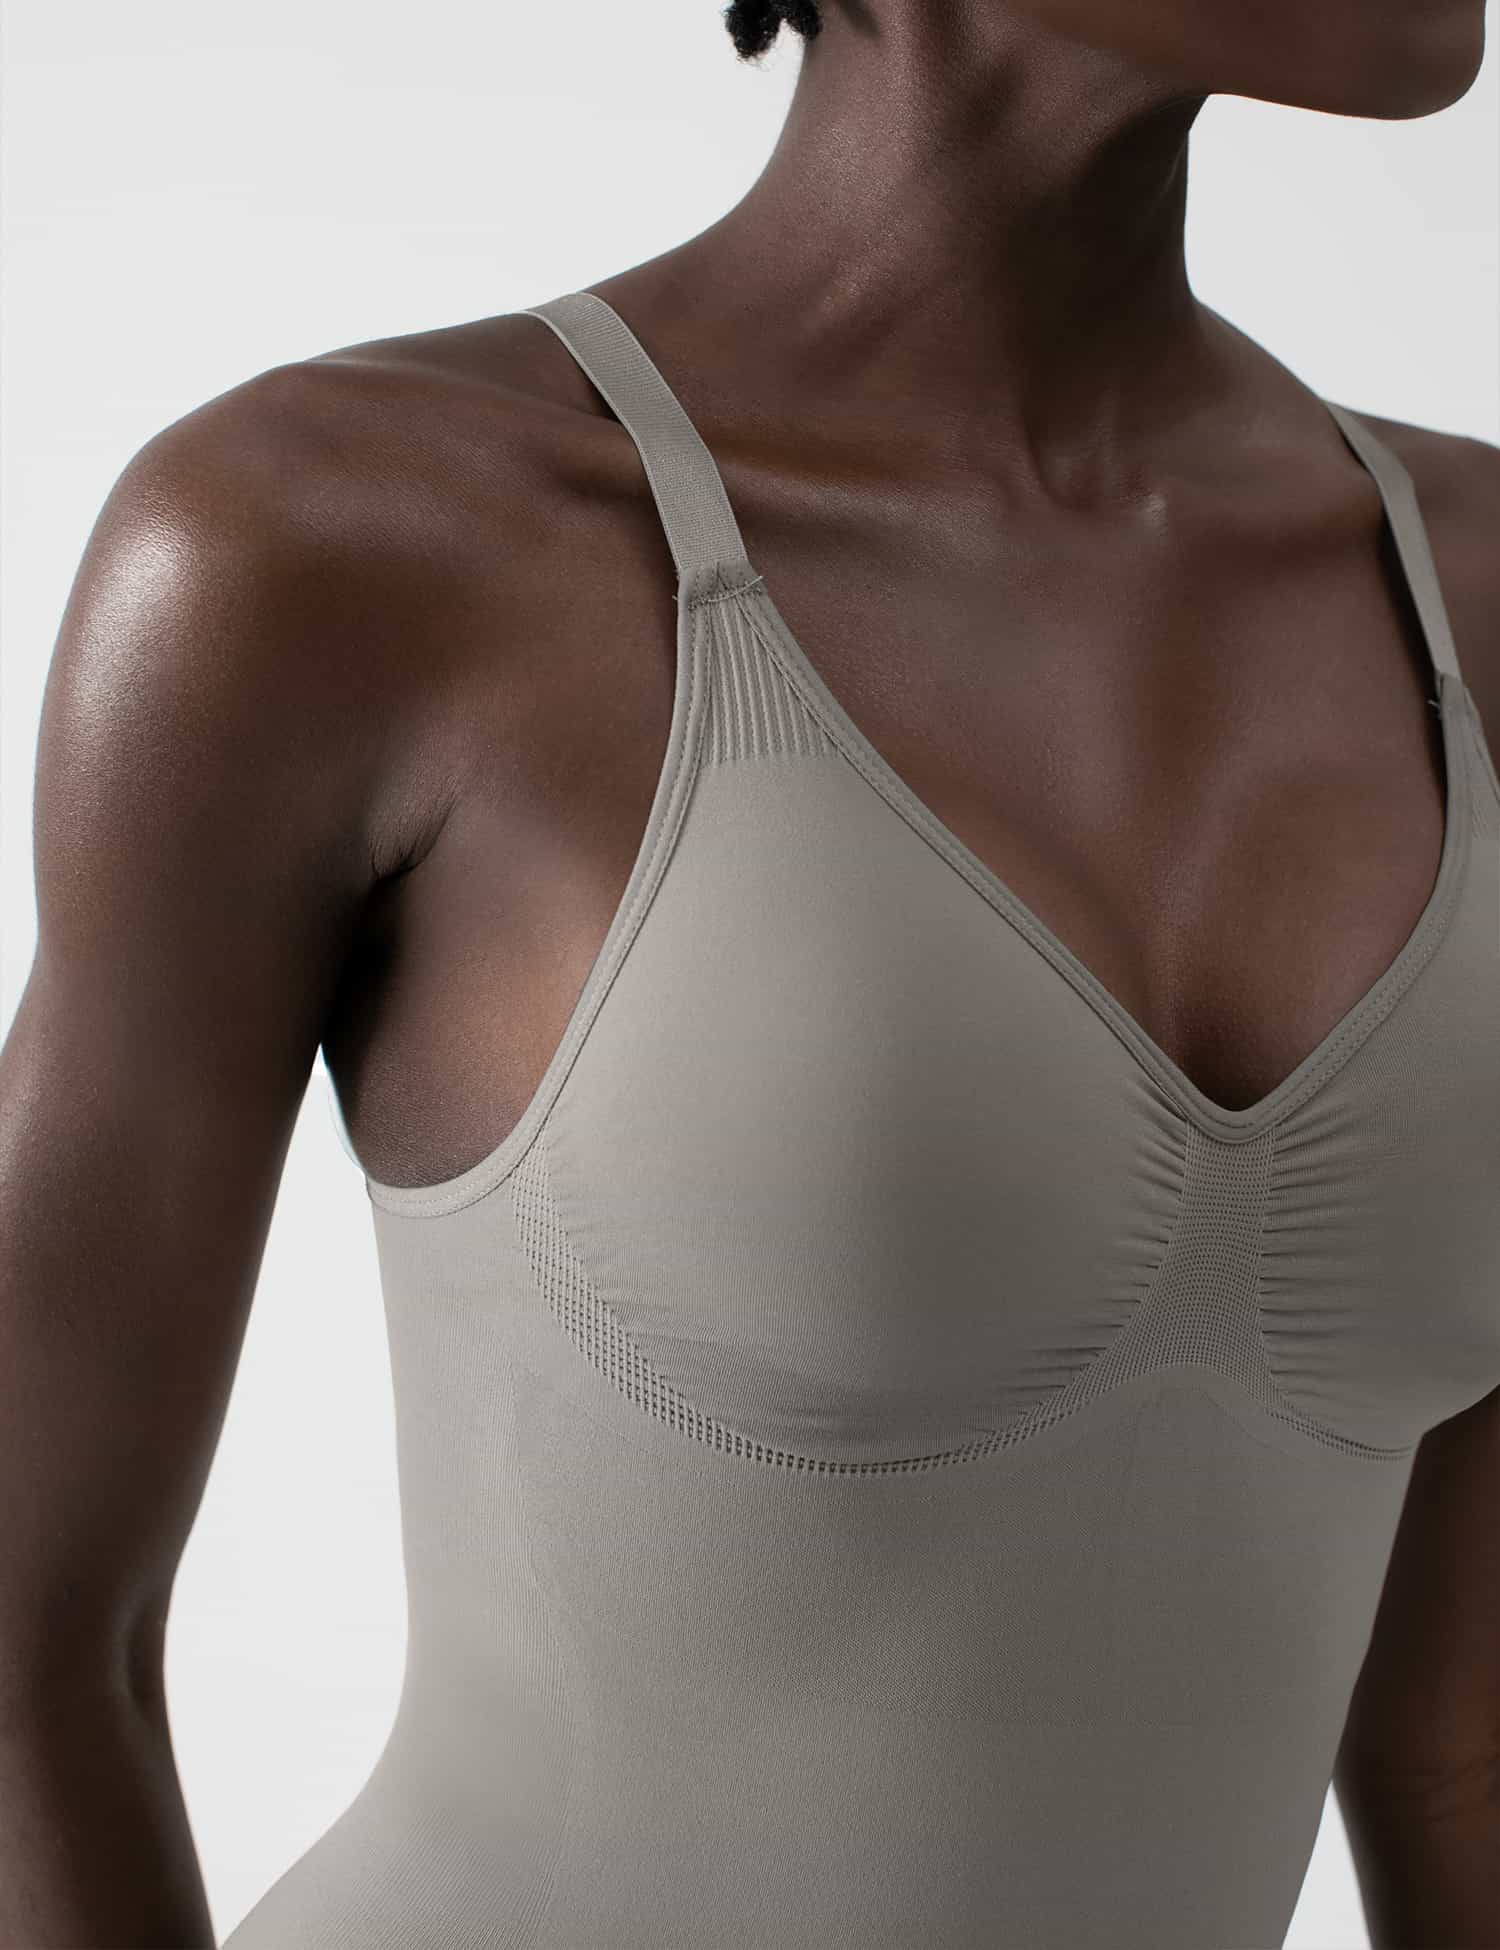 PUMIEY Shapewear Bodysuit for Women Tummy Control Uganda